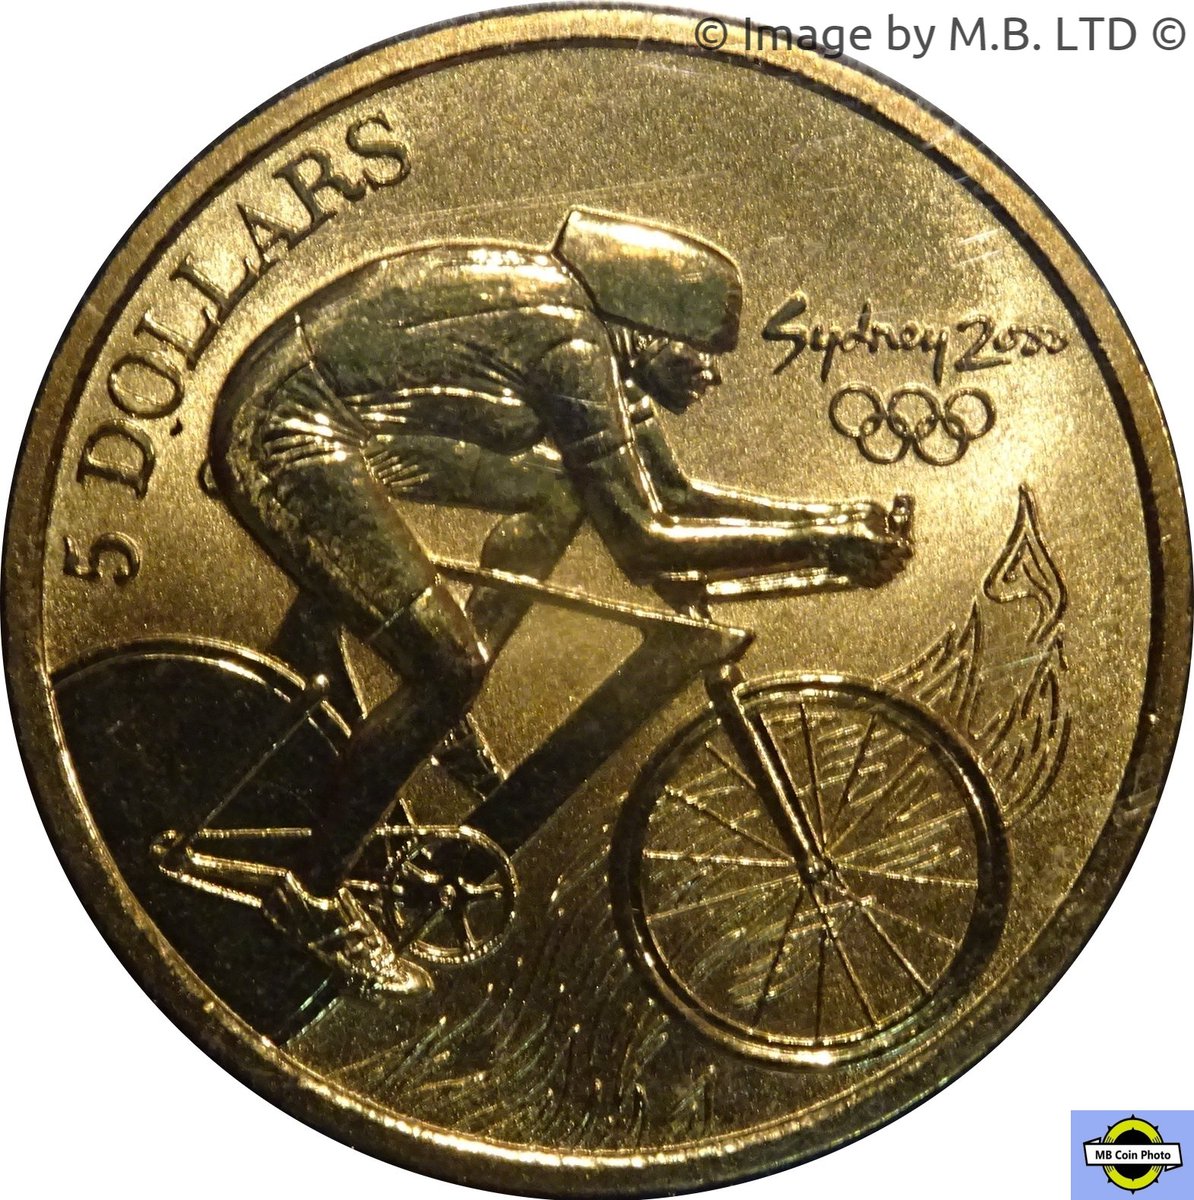 2000 yılı Avusturalya olimpiyatlarına ait basılan 5 Avusturalya doları. 
#sydney2000